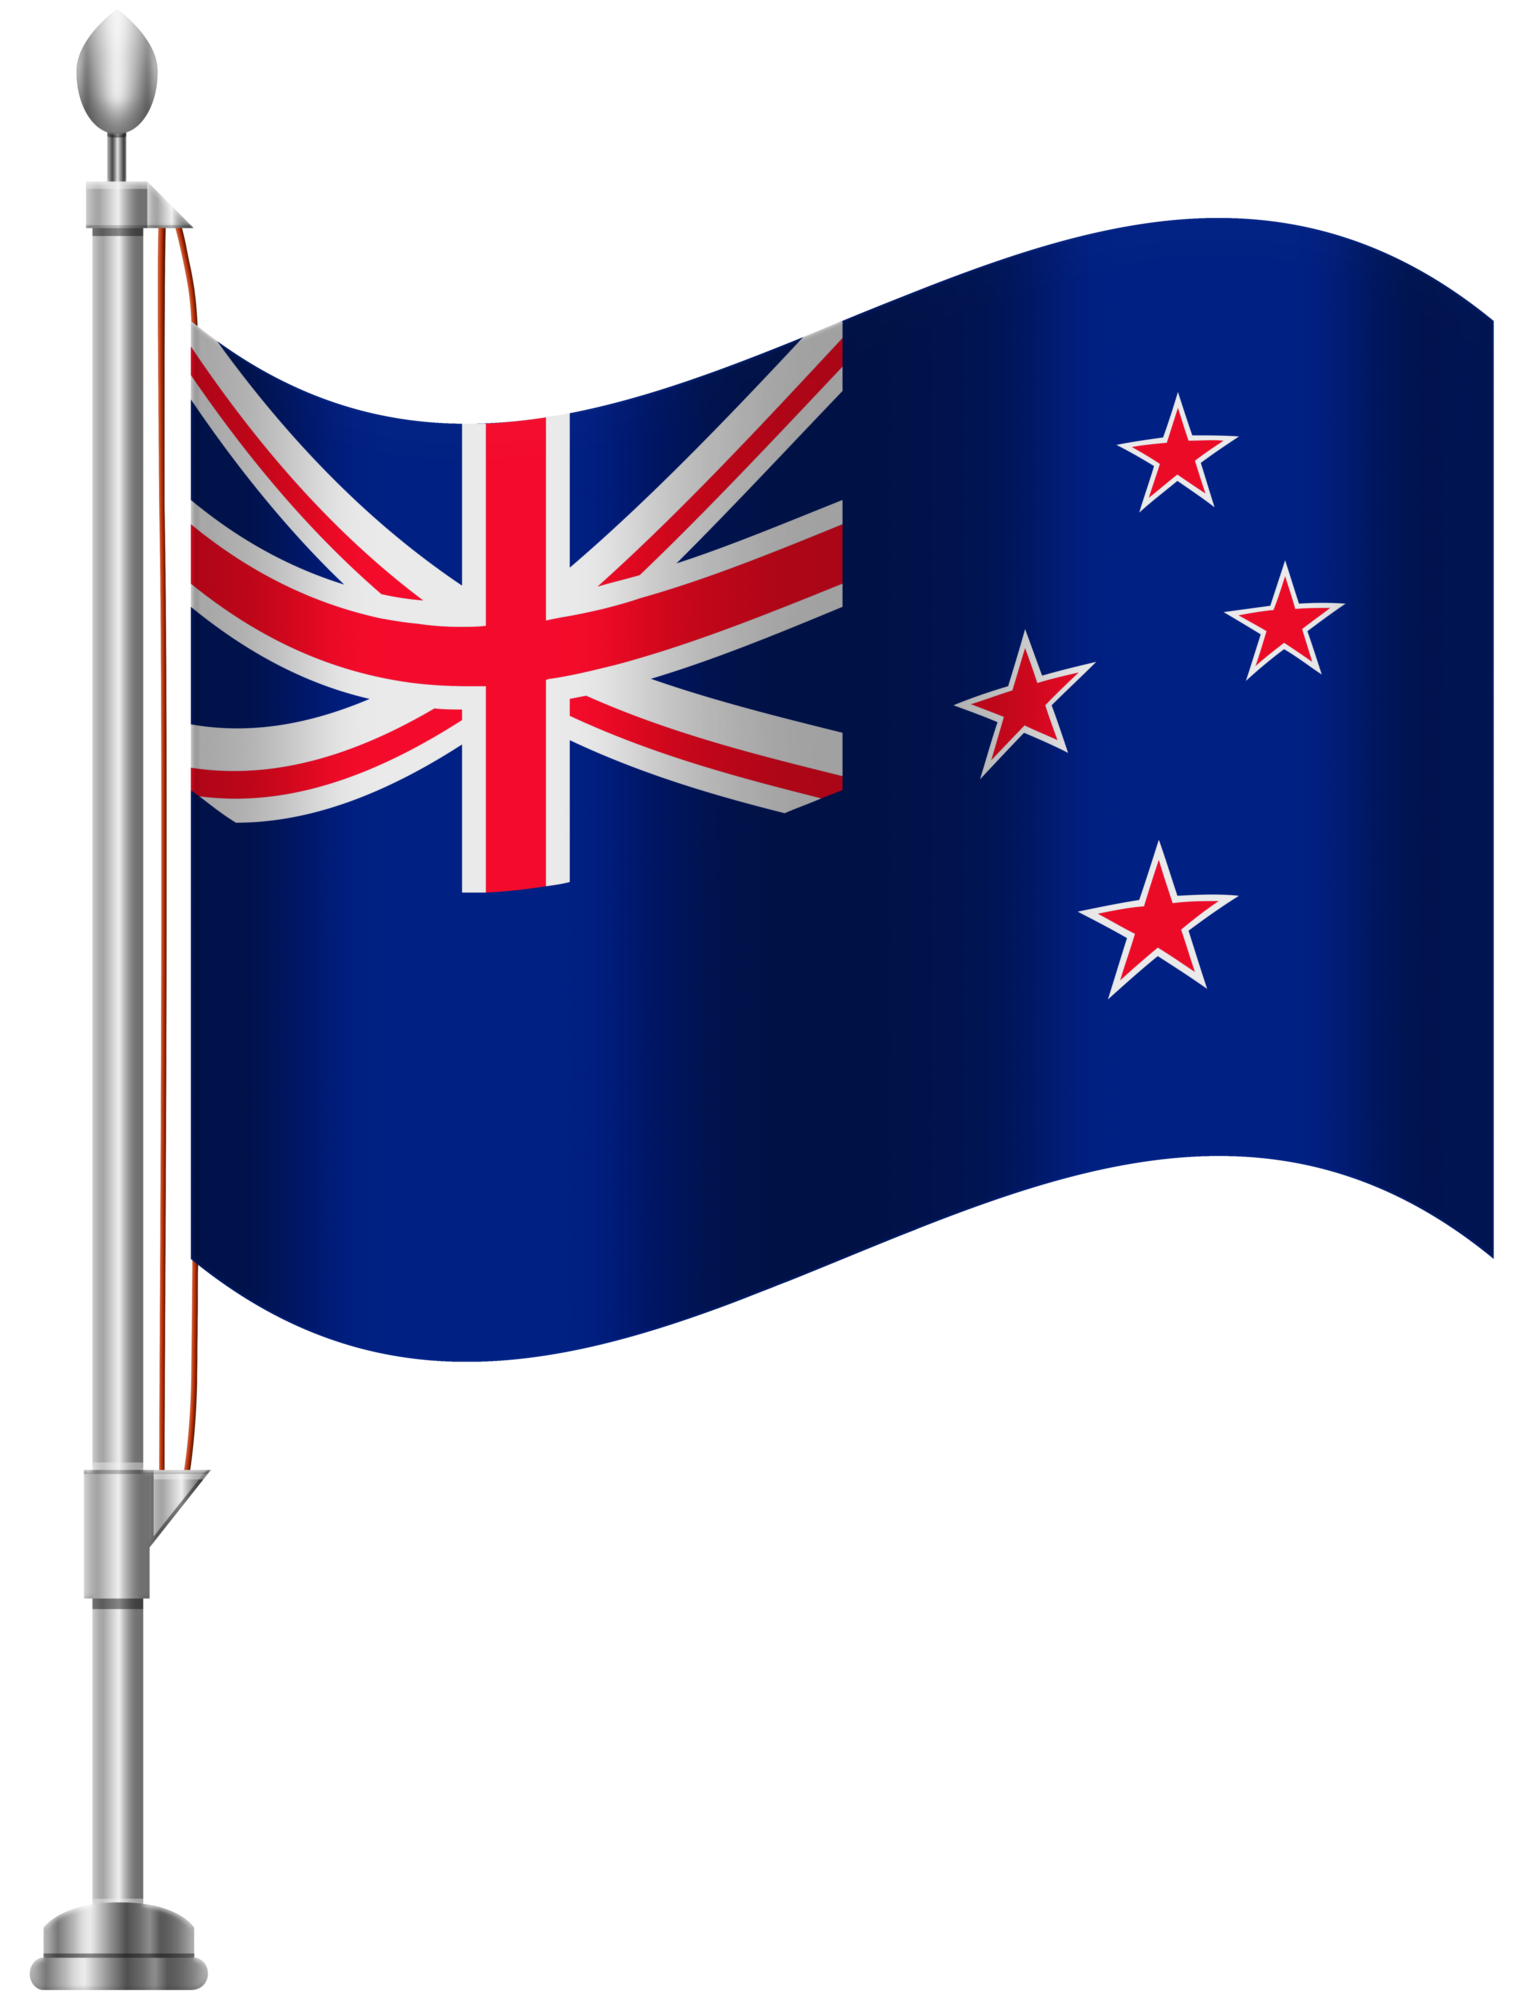 新西兰国旗图片_新西兰国旗图片大全_全景图片